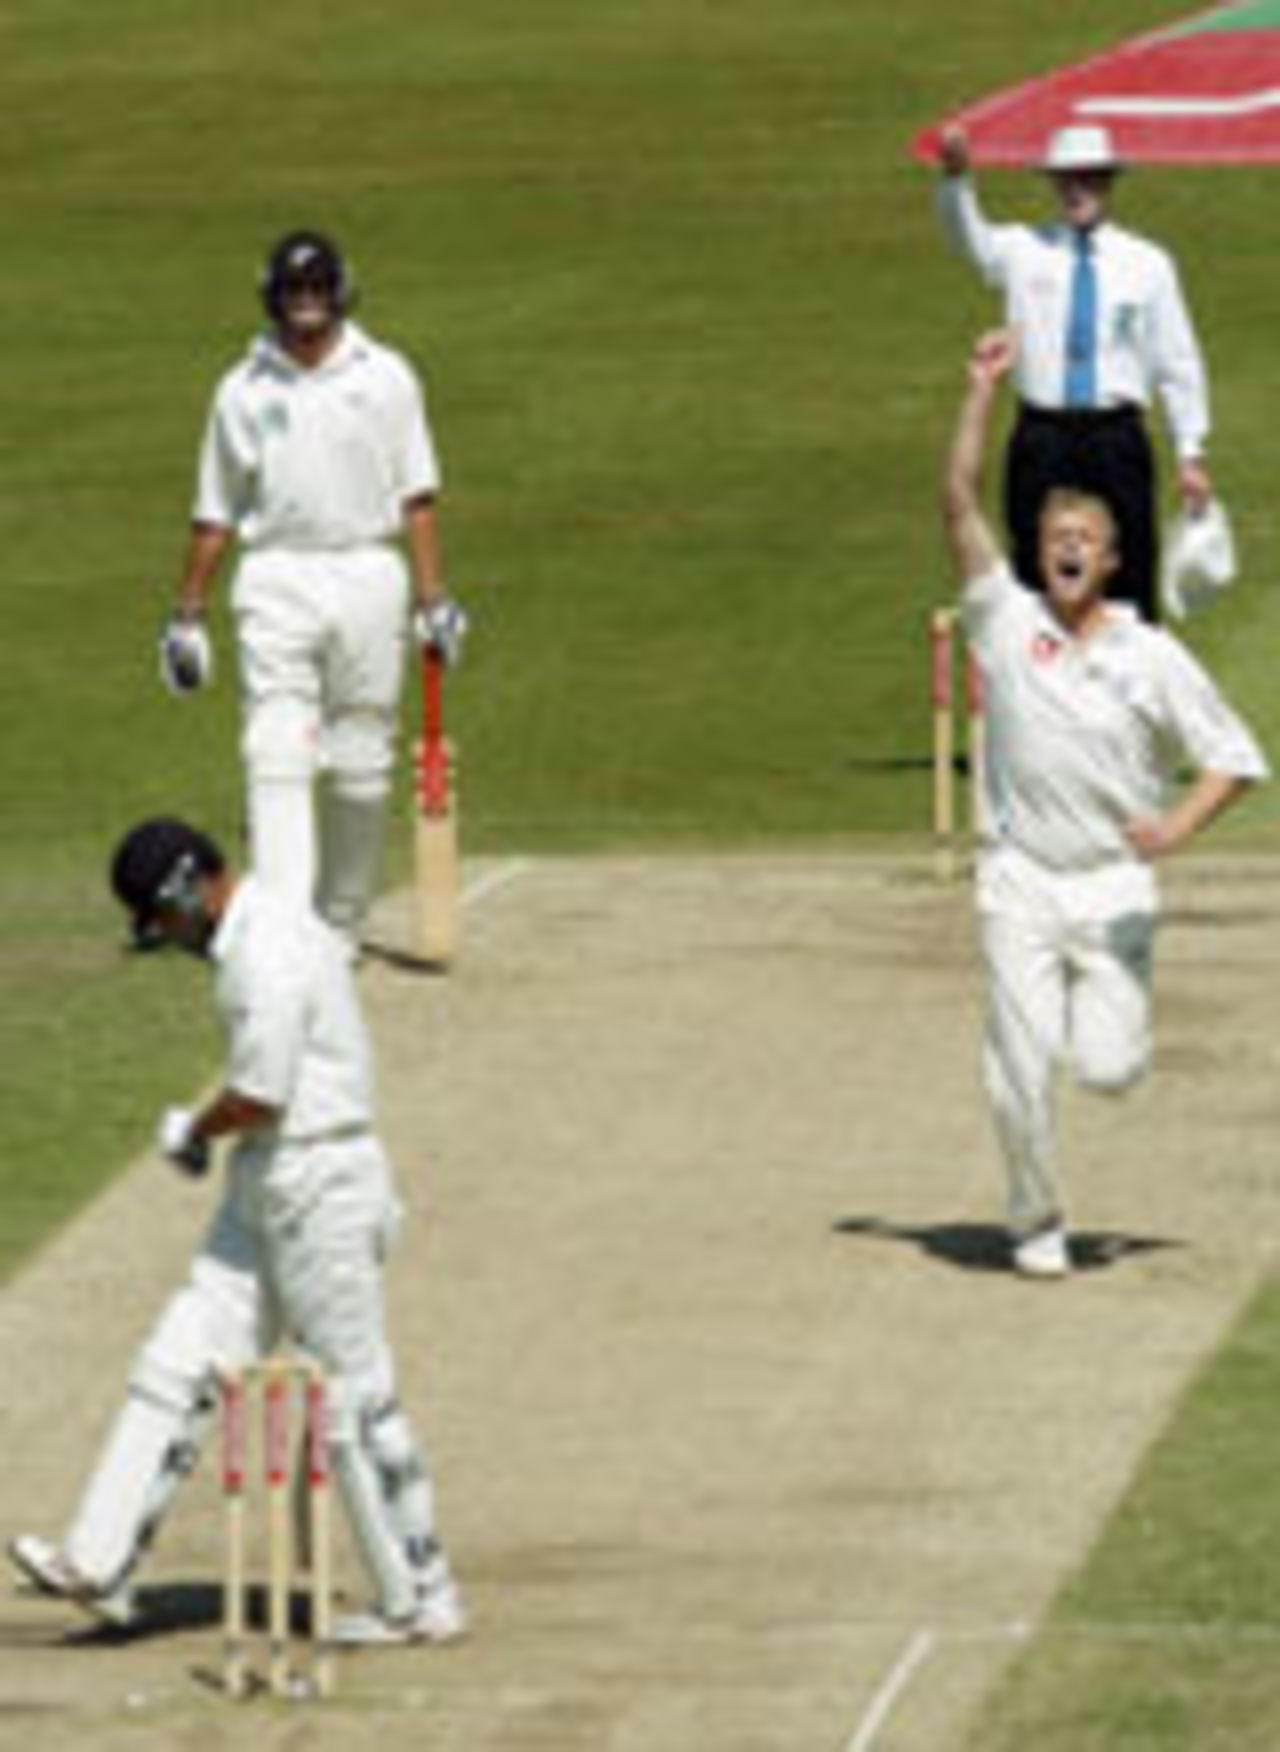 Andrew Flintoff dismisses James Franklin, England v New Zealand, 3rd Test, Trent Bridge, June 13, 2004